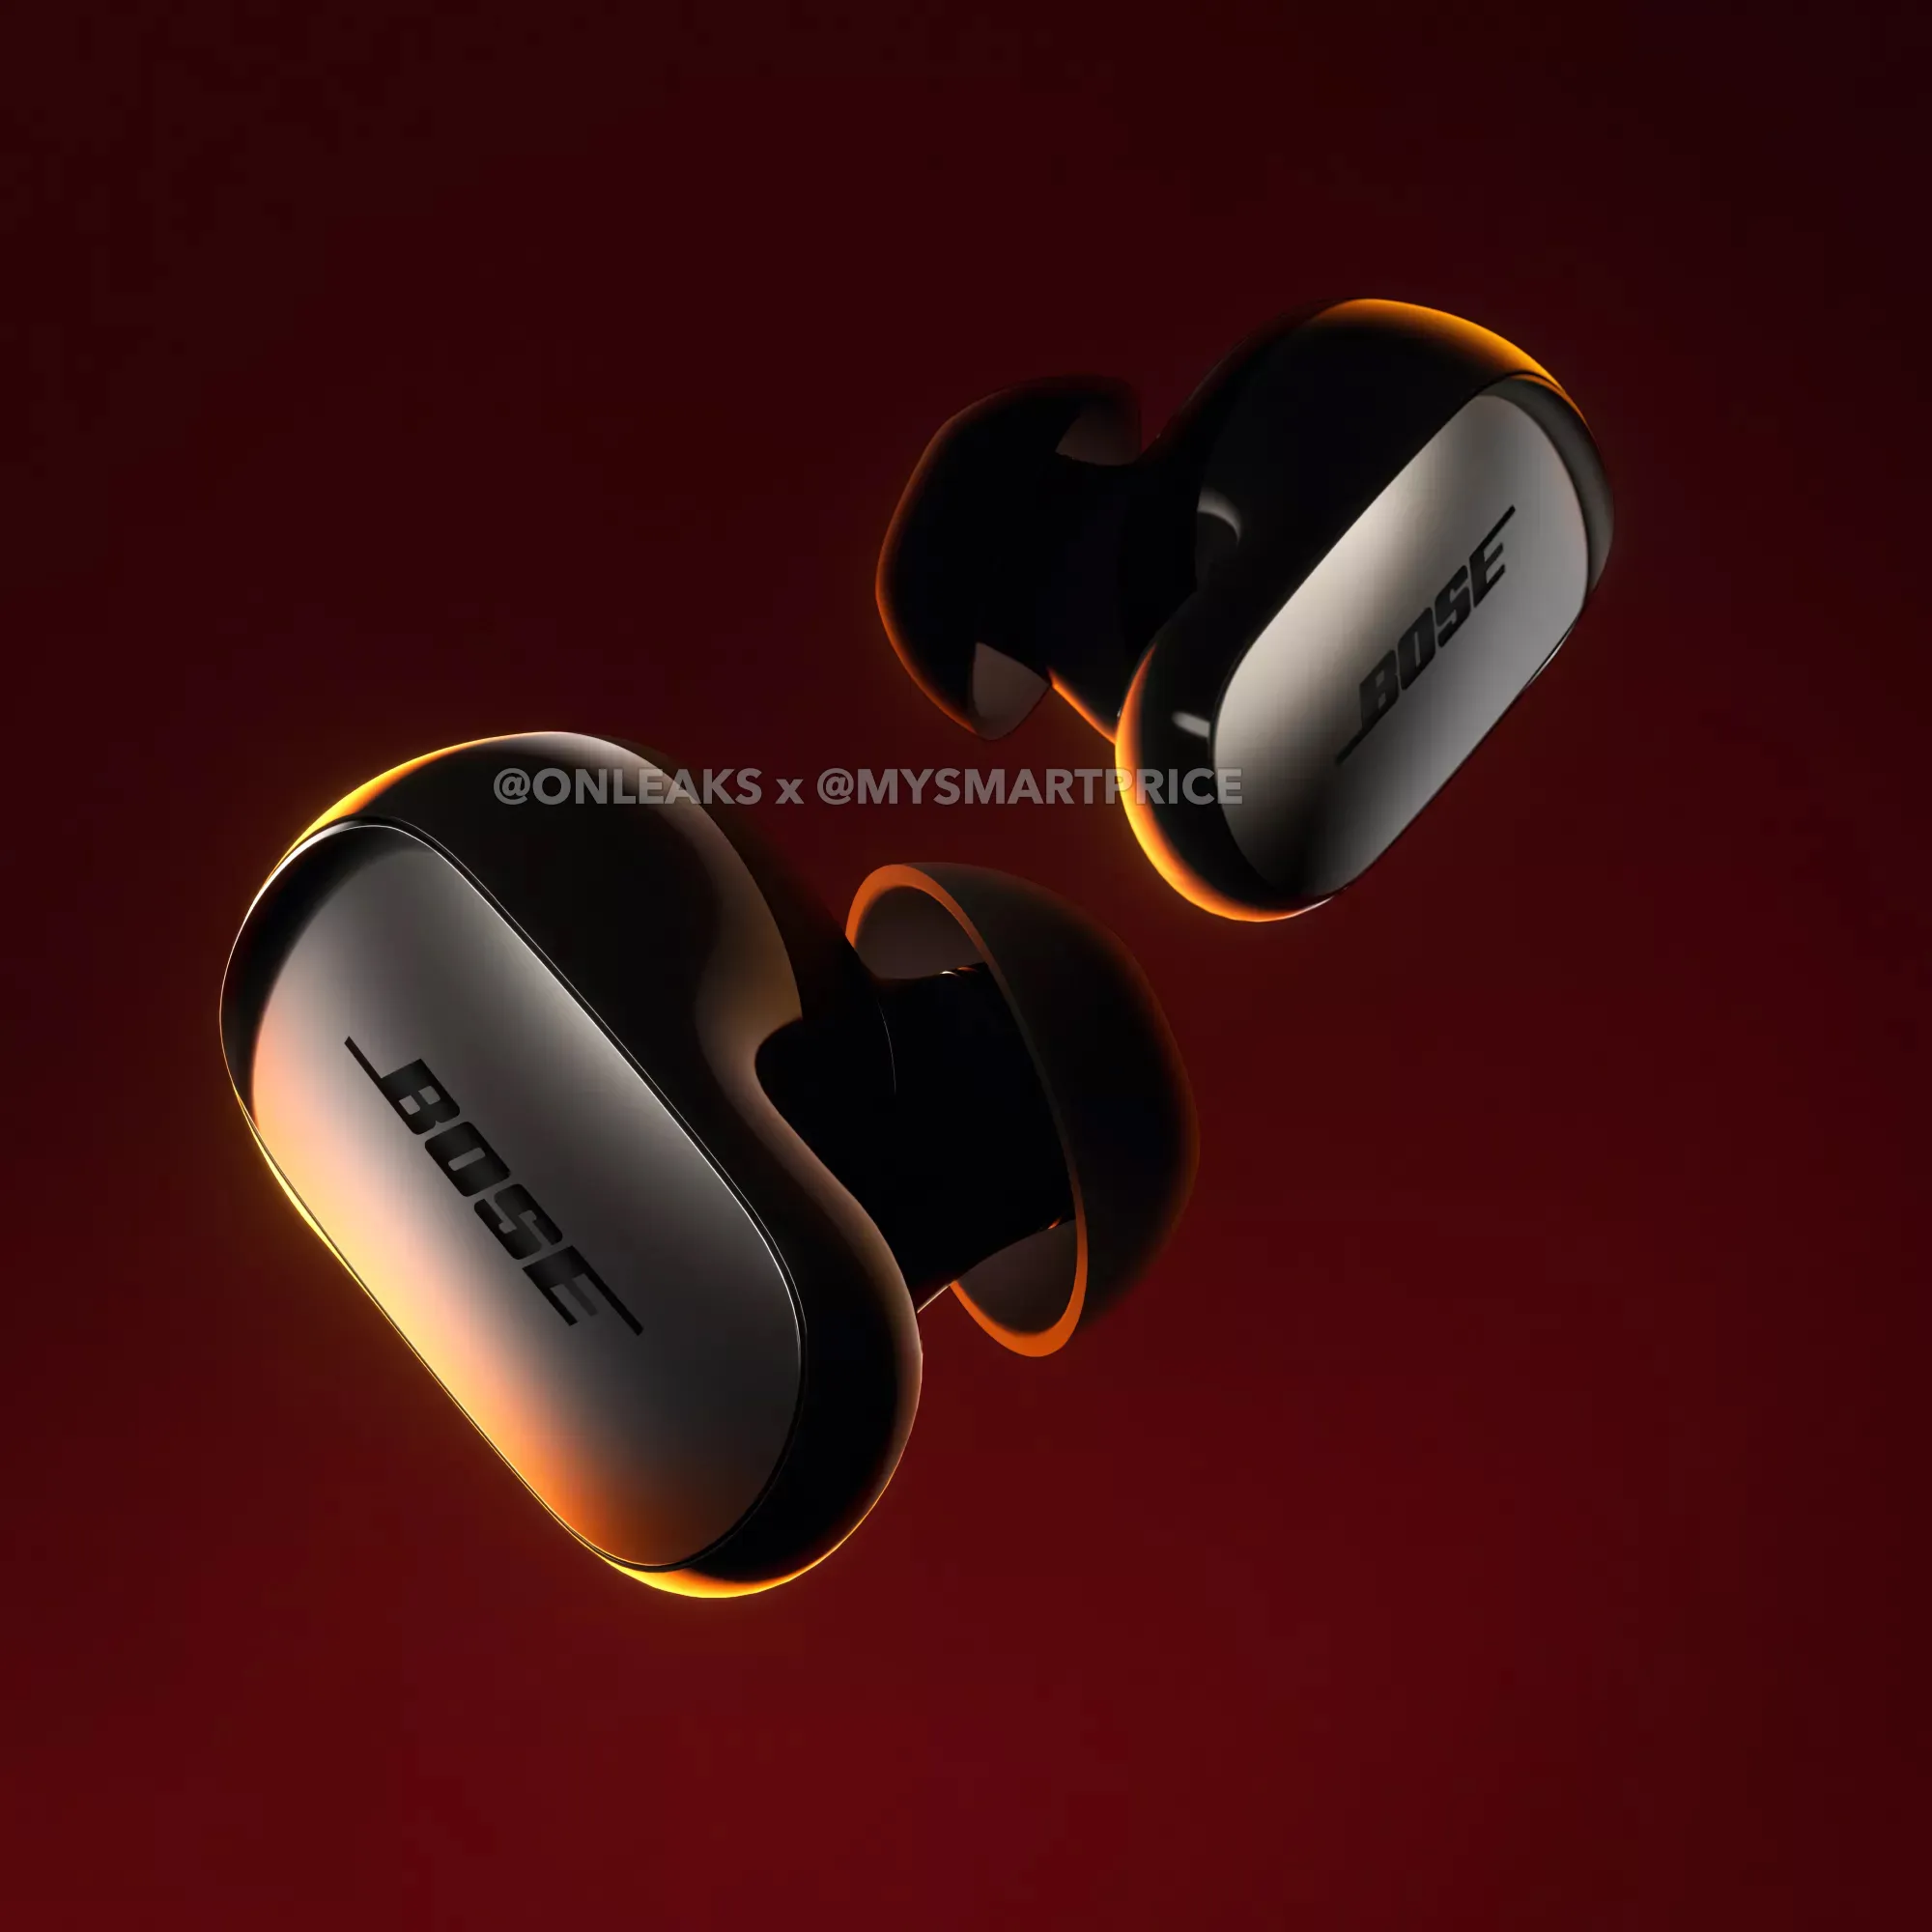 Nuevos auriculares Bose QuietComfort II, inalámbricos, Bluetooth, los  mejores auriculares intrauditivos con cancelación de ruido personalizada y